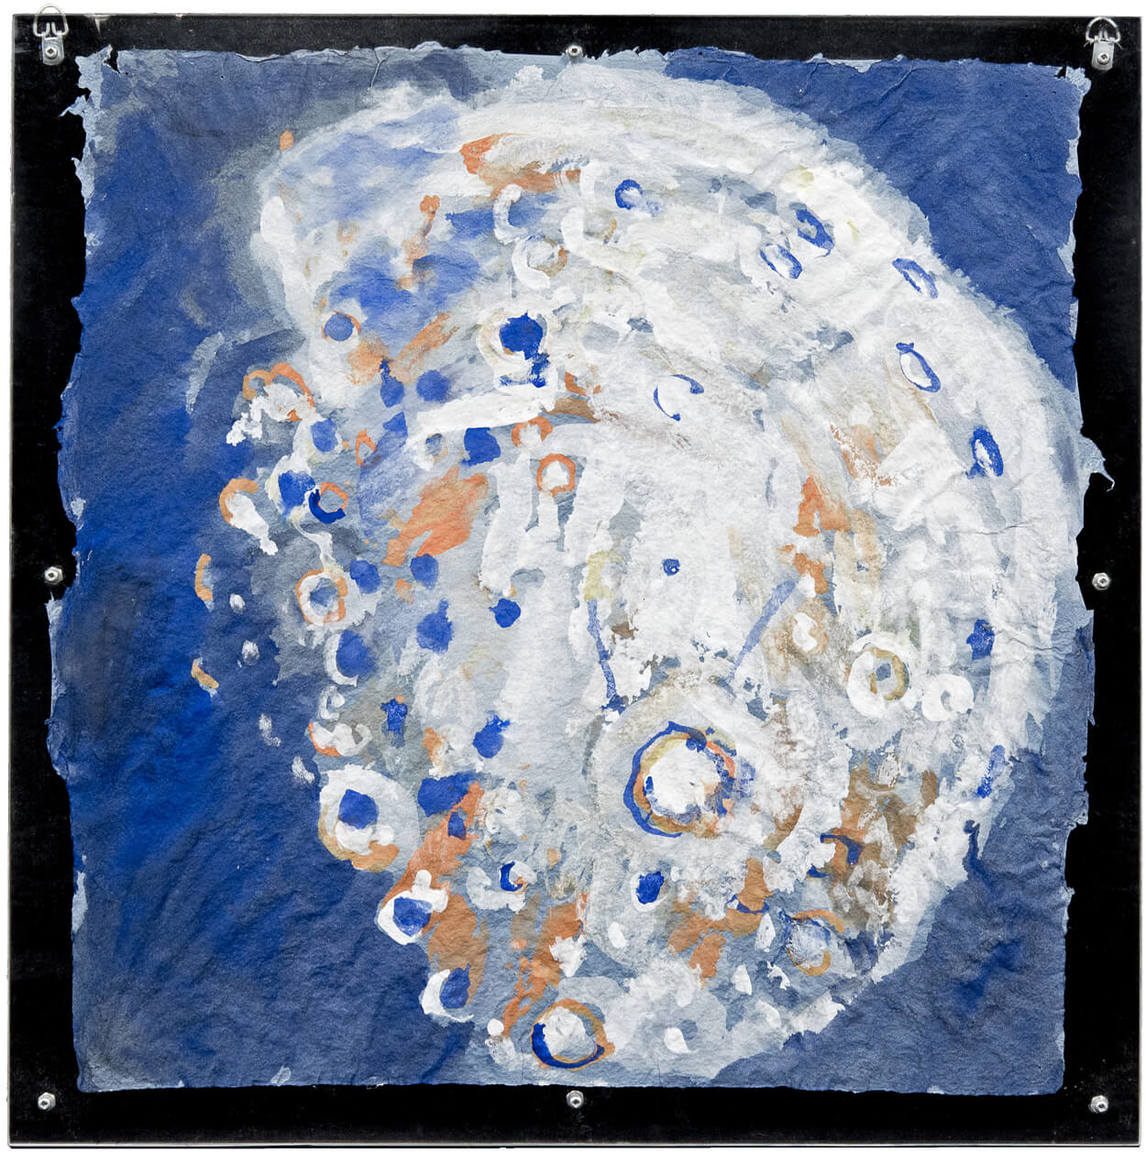 Paterson Ewen, Moon (Lune), 1975